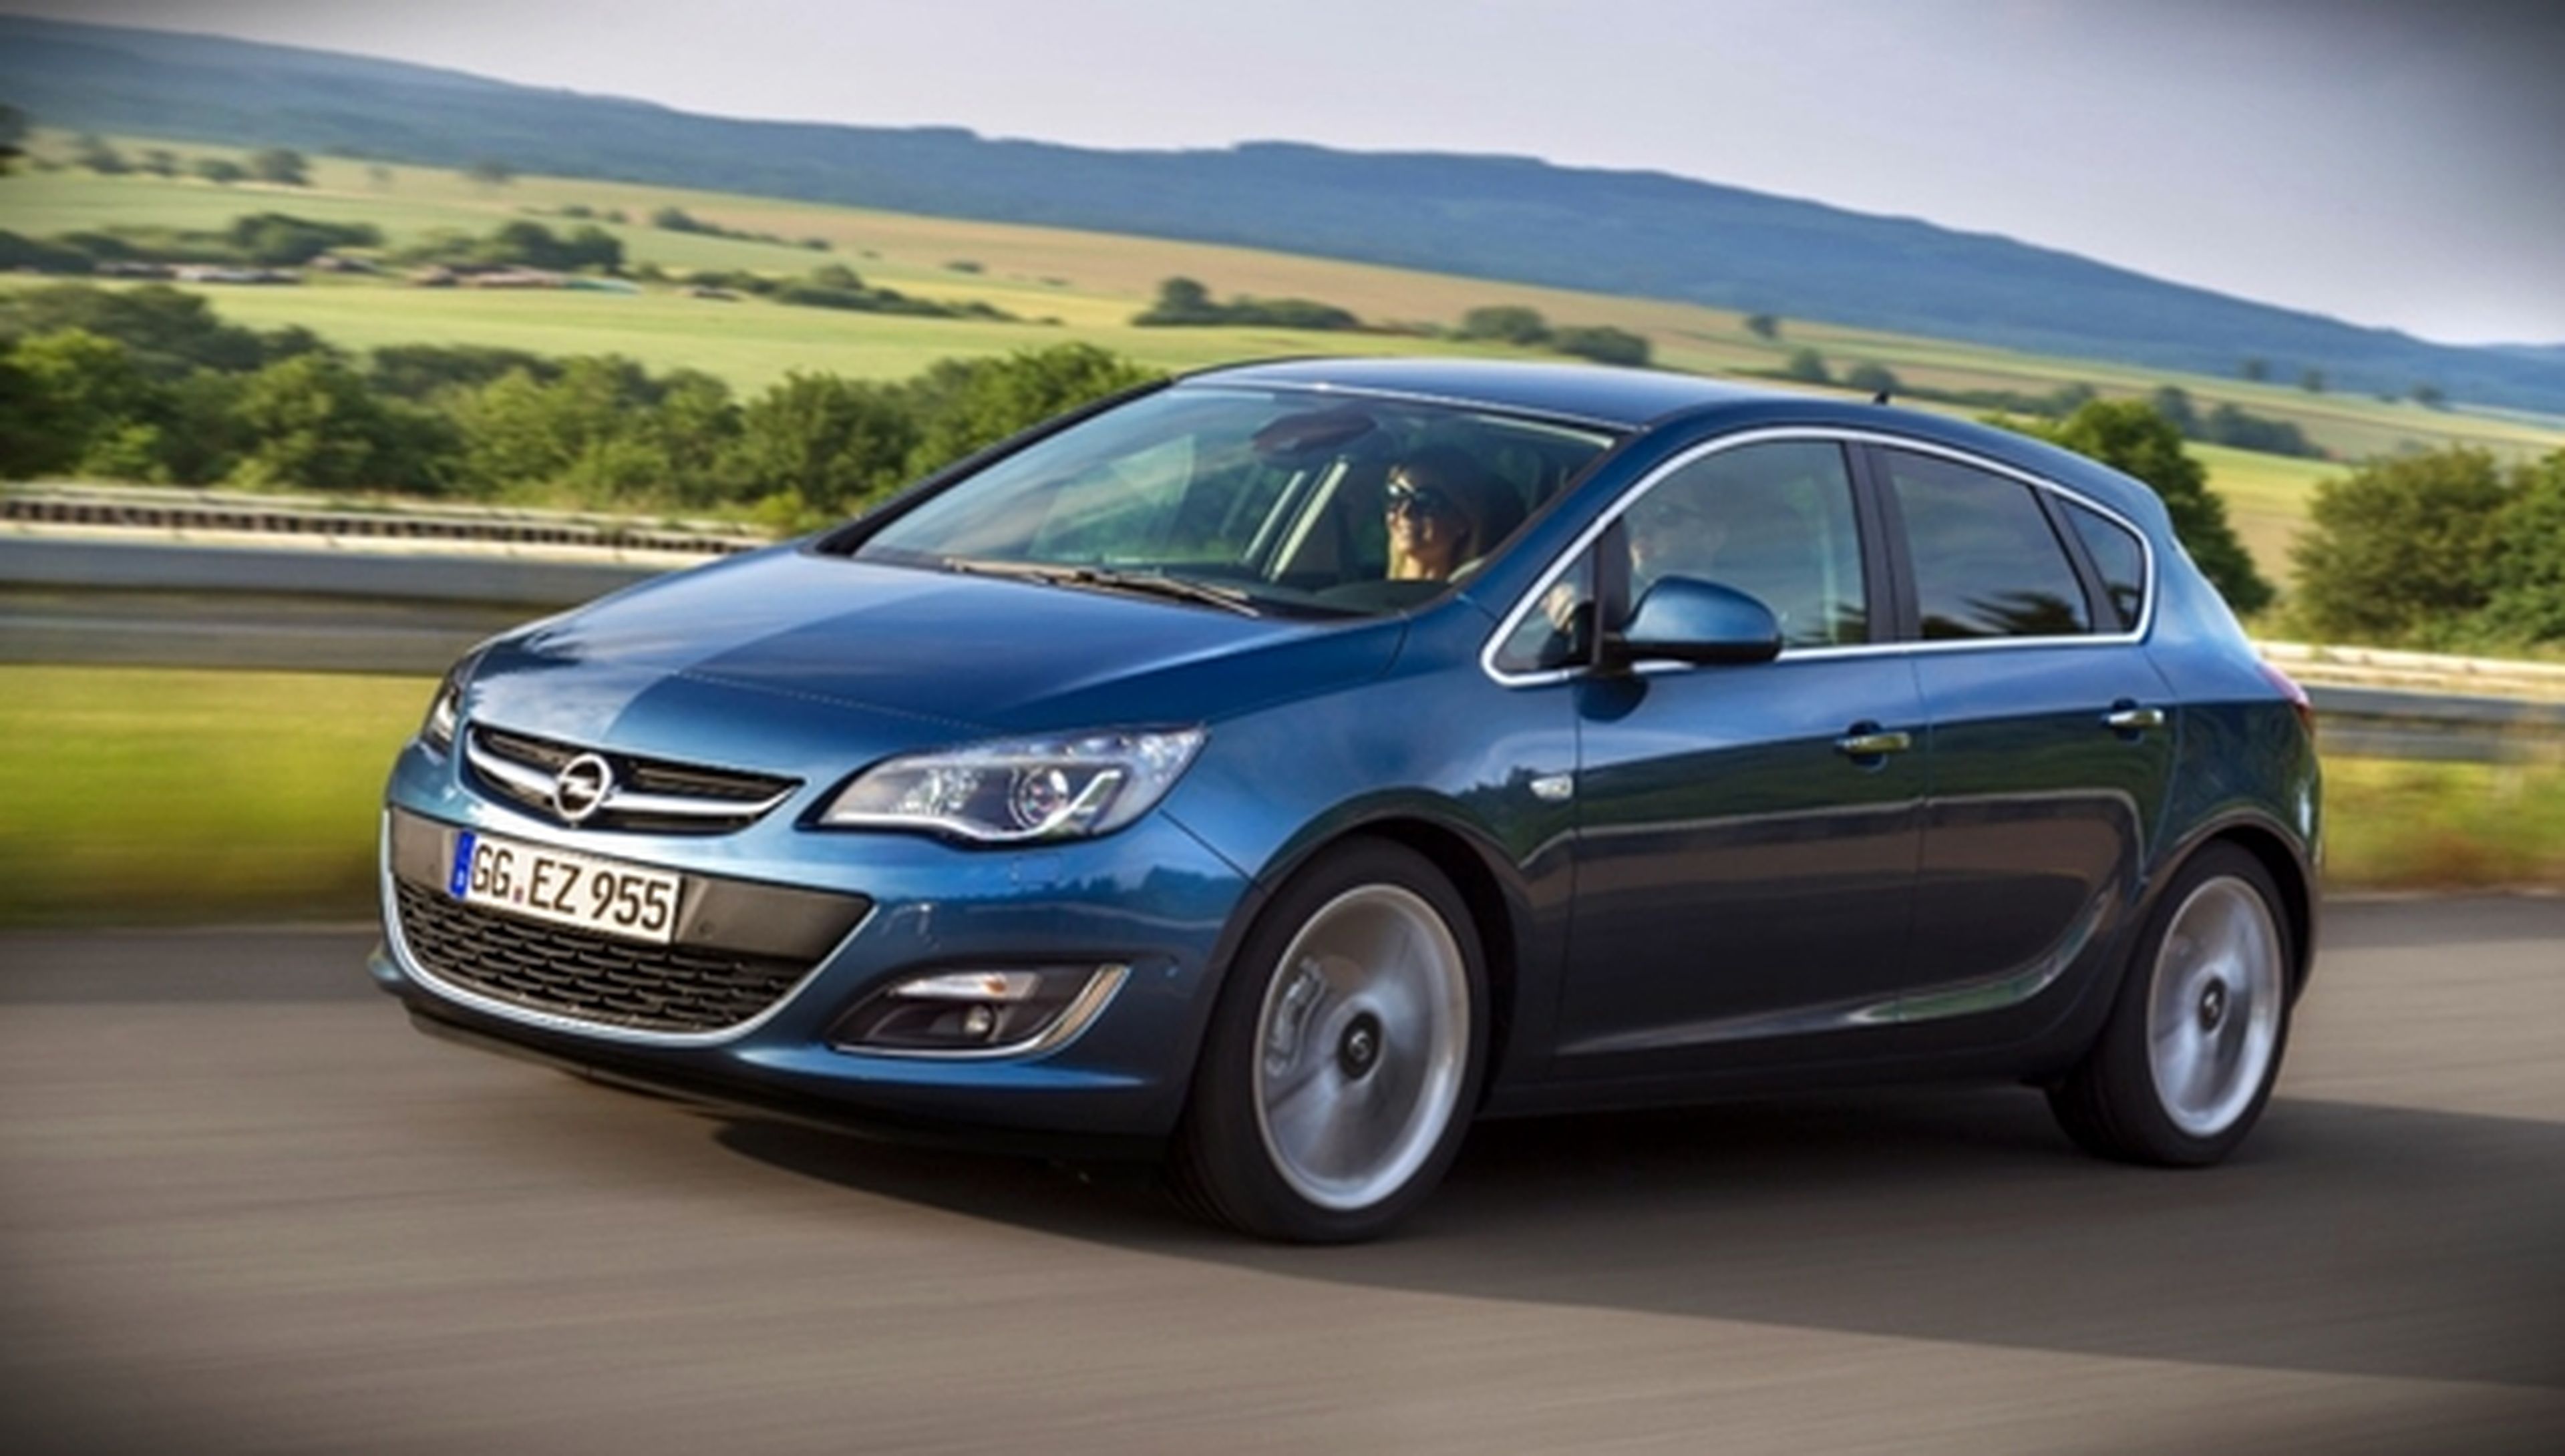 El nuevo Opel Astra 1.6 CDTI consumirá solo 3,7 l/100 km